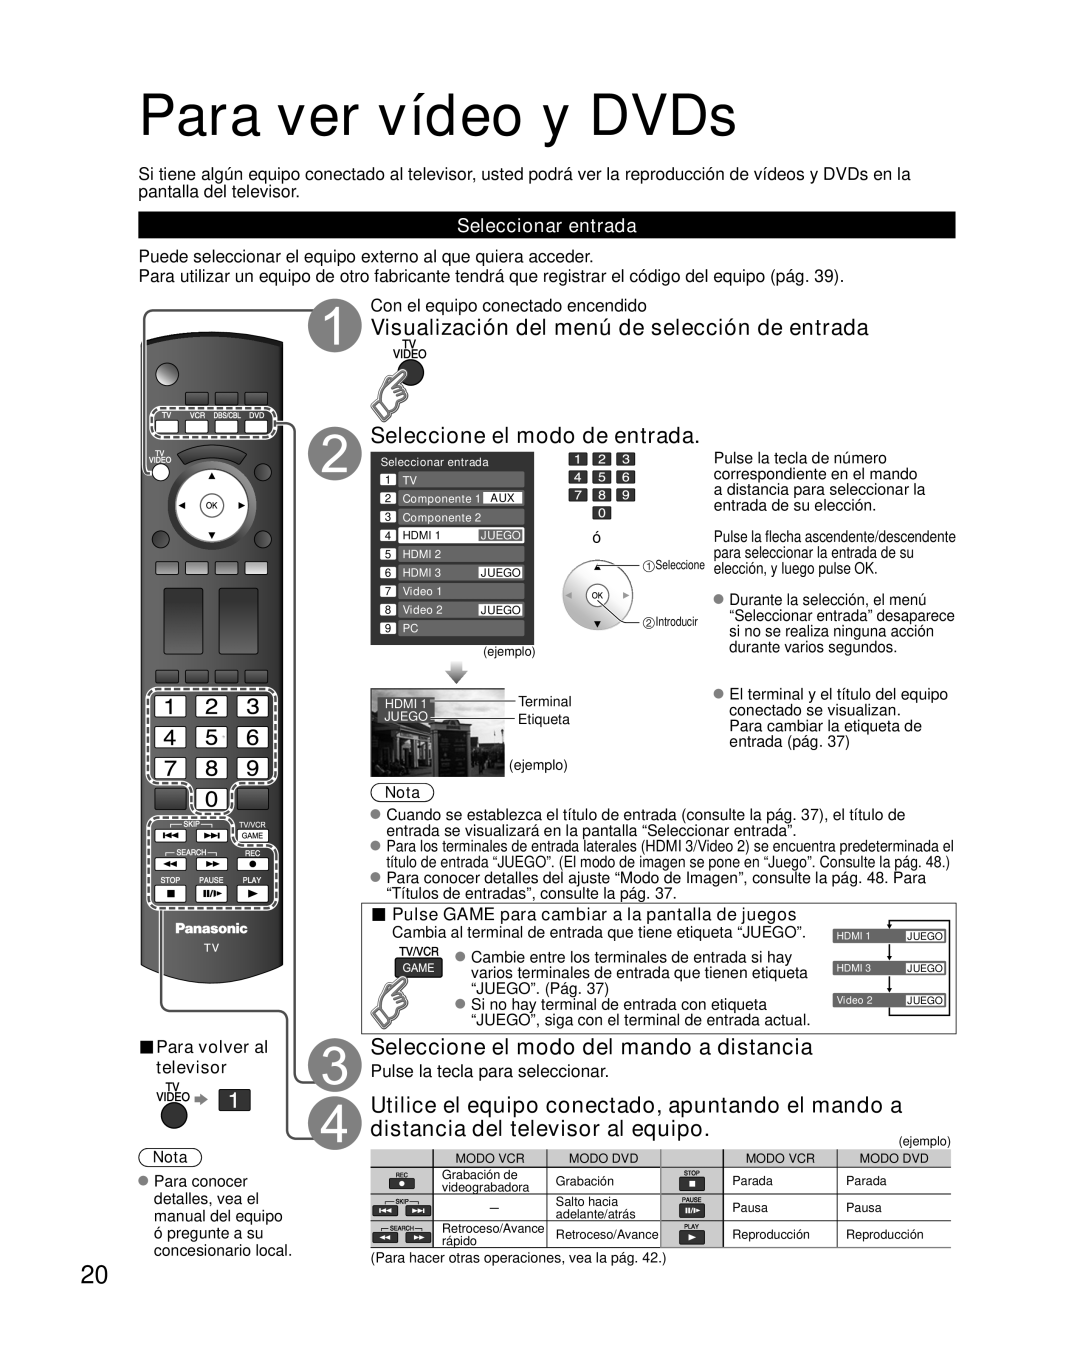 Panasonic TH-42PZ85U Para ver vídeo y DVDs, Visualización del menú de selección de entrada, Seleccione el modo de entrada 